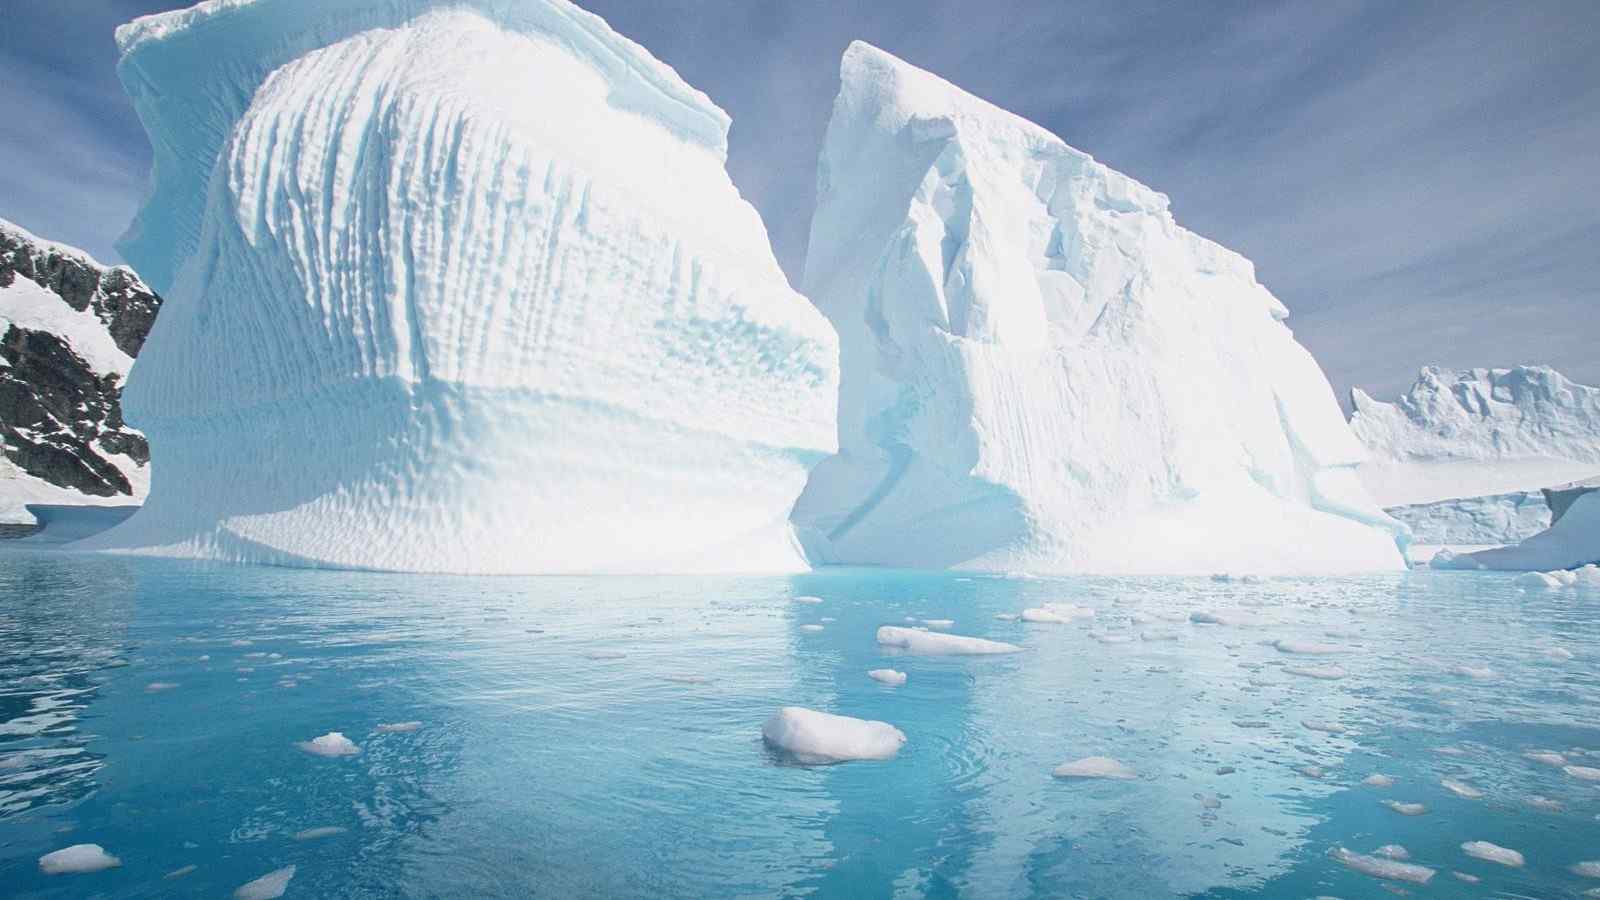 阿拉斯加和南极洲唯美风景奇观壁纸图片大全